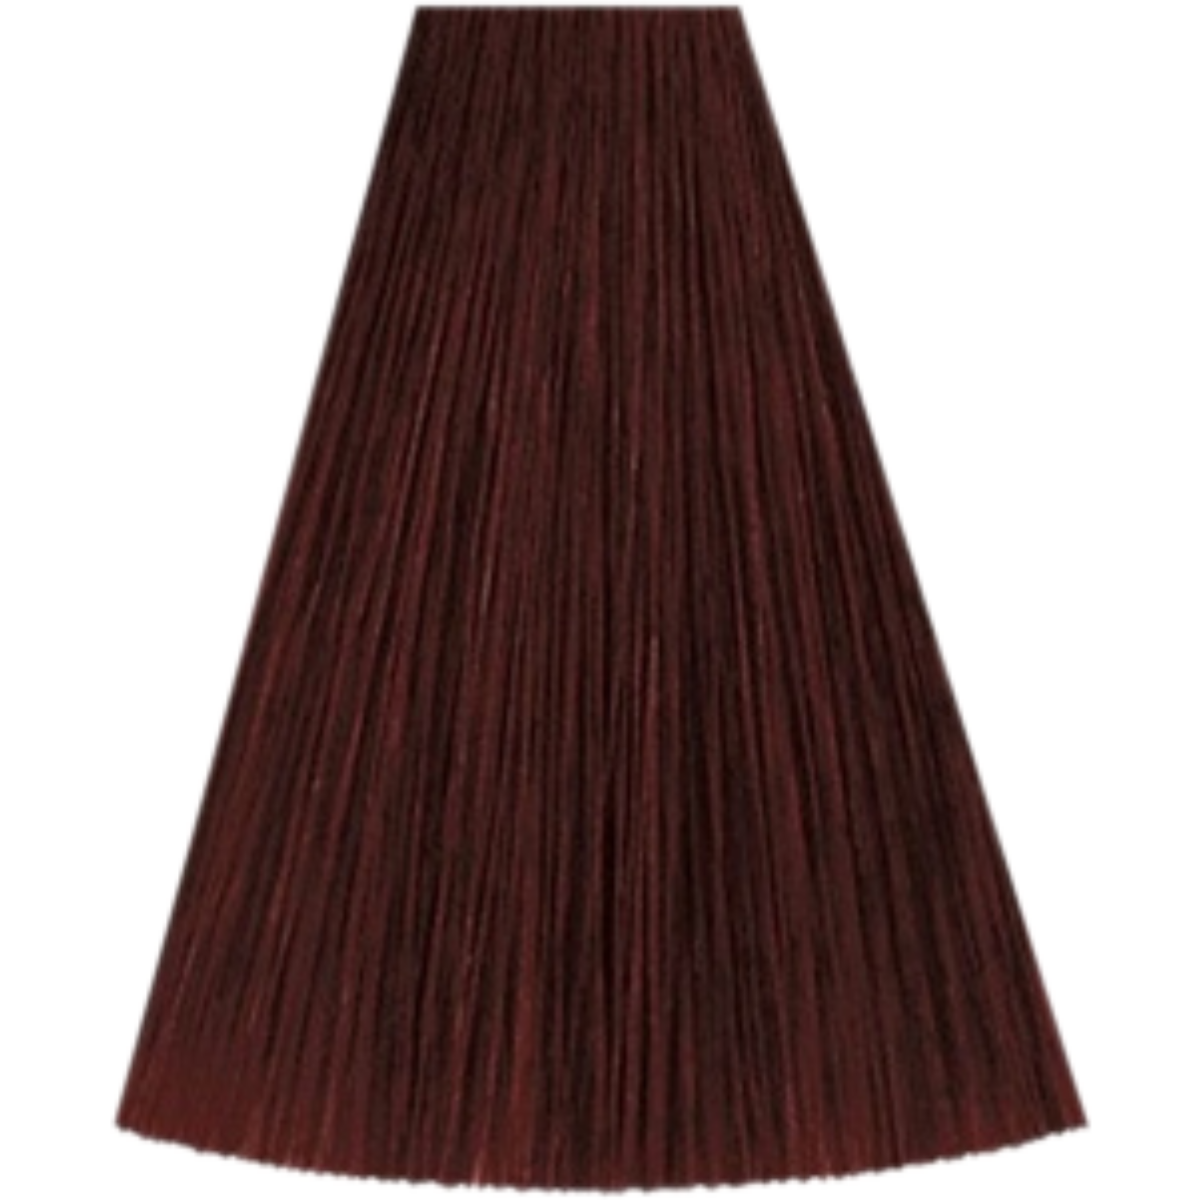 צבע שיער 5/5 LIGHT BROWN MAHOGANY קאדוס KADUS צבע לשיער 60 גרם